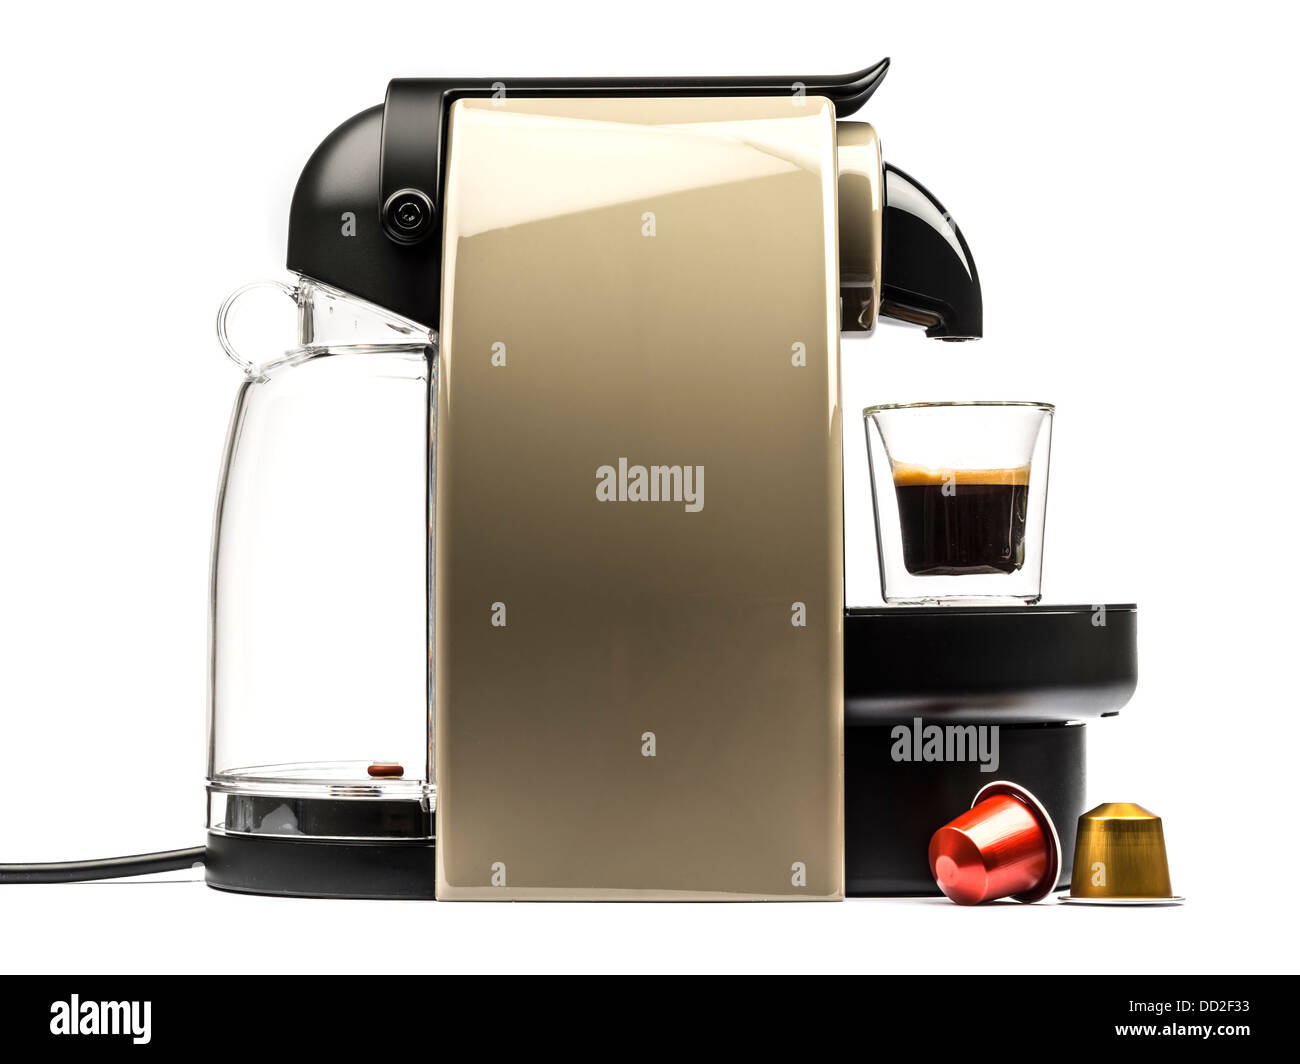 Vue latérale d'une machine à café Nespresso découper isolé sur fond blanc Banque D'Images